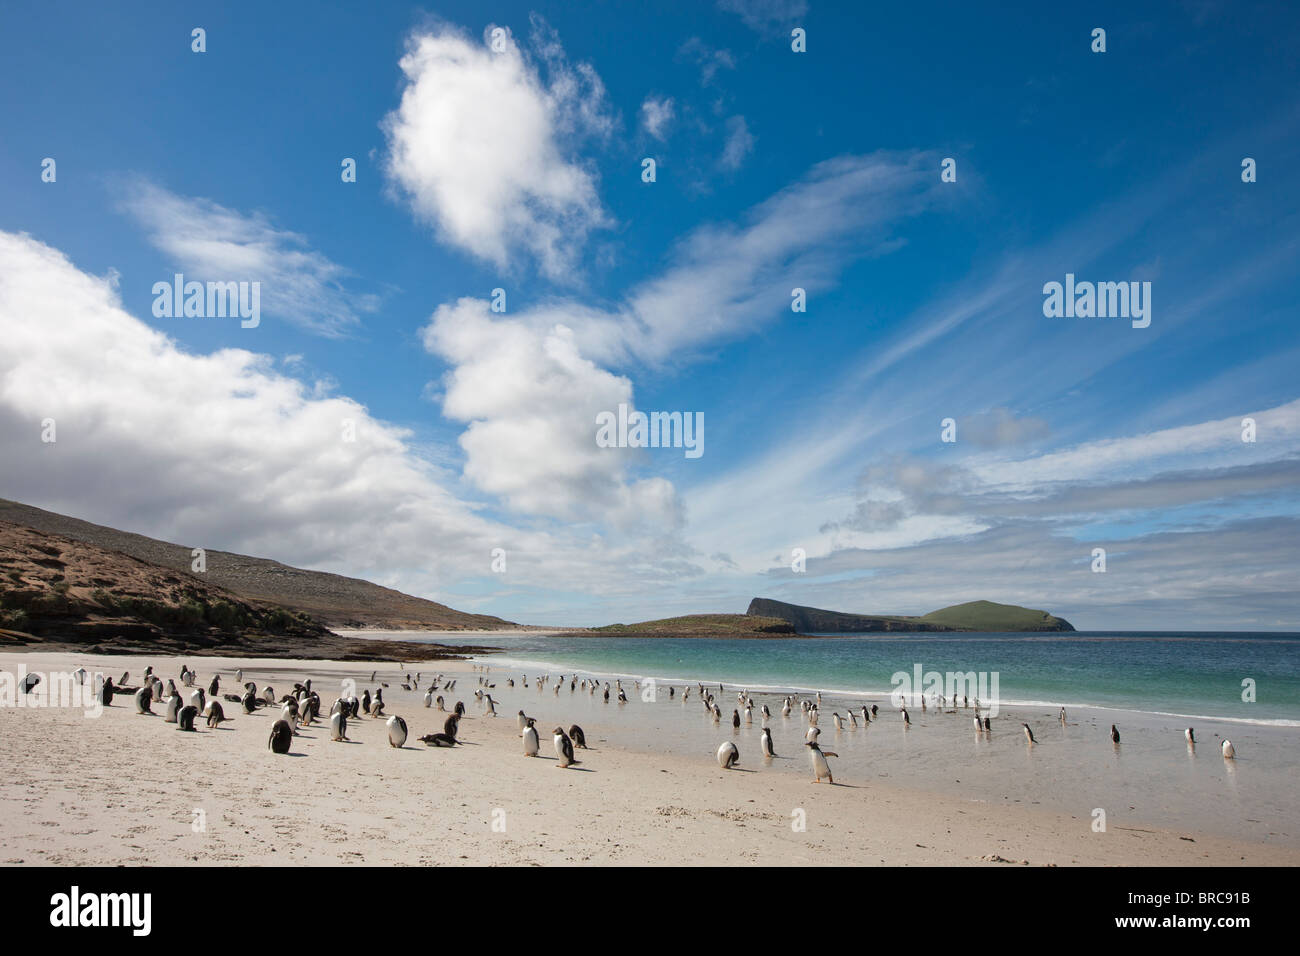 Belle plage, sur la pointe sud de l'île de la carcasse, avec Gentoo et les pingouins de Magellan, allant et venant à la mer, îles Malouines Banque D'Images